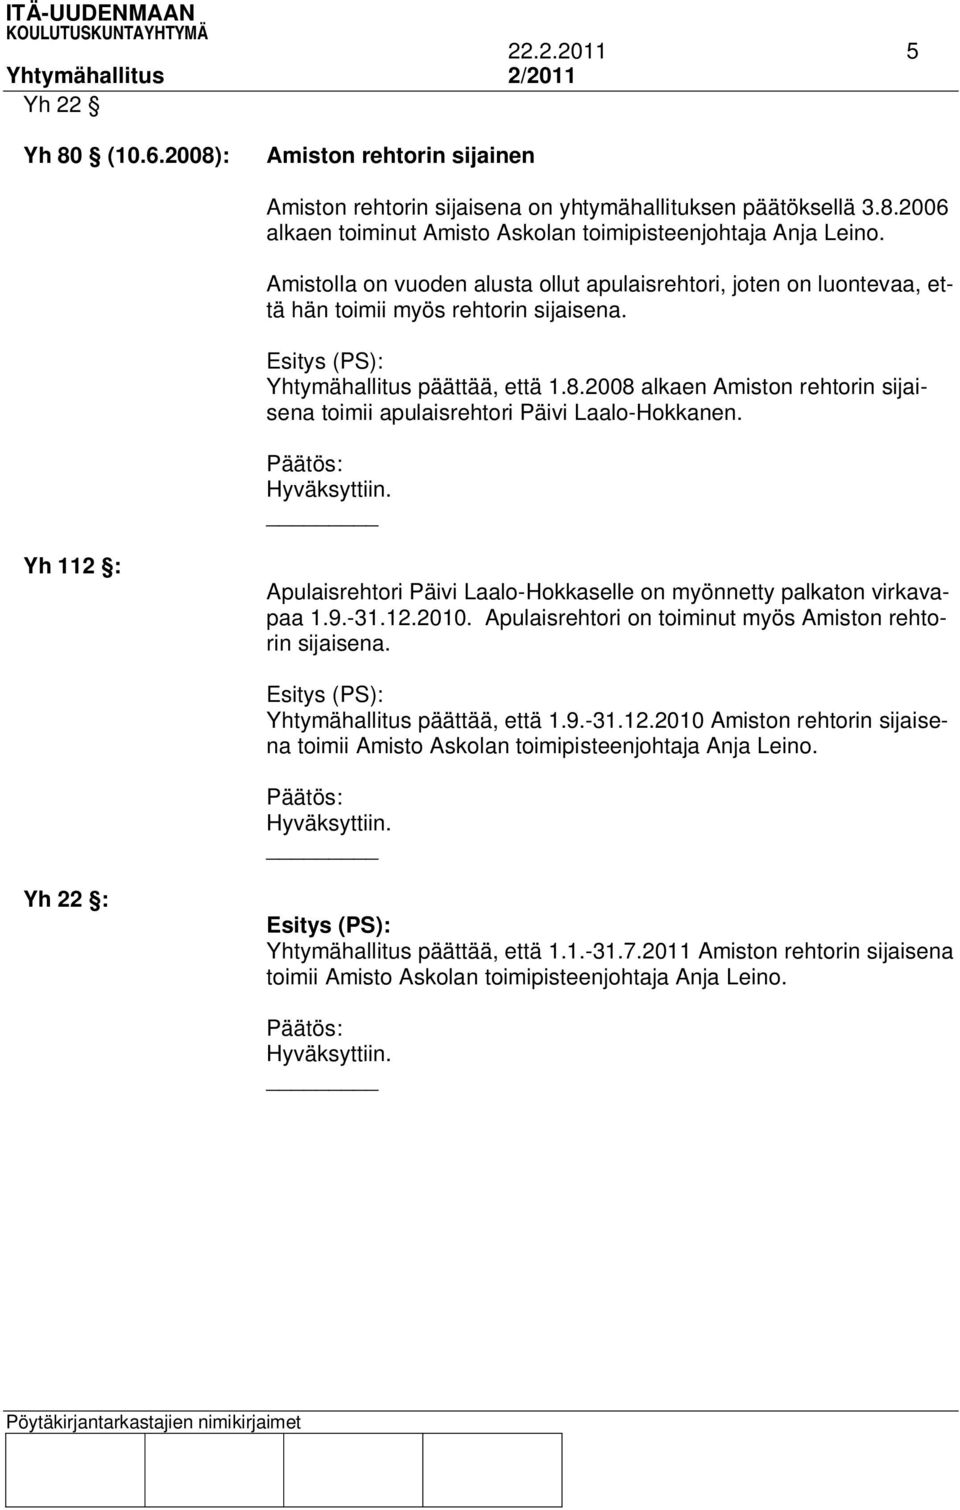 2008 alkaen Amiston rehtorin sijaisena toimii apulaisrehtori Päivi Laalo-Hokkanen. Yh 112 : Apulaisrehtori Päivi Laalo-Hokkaselle on myönnetty palkaton virkavapaa 1.9.-31.12.2010.